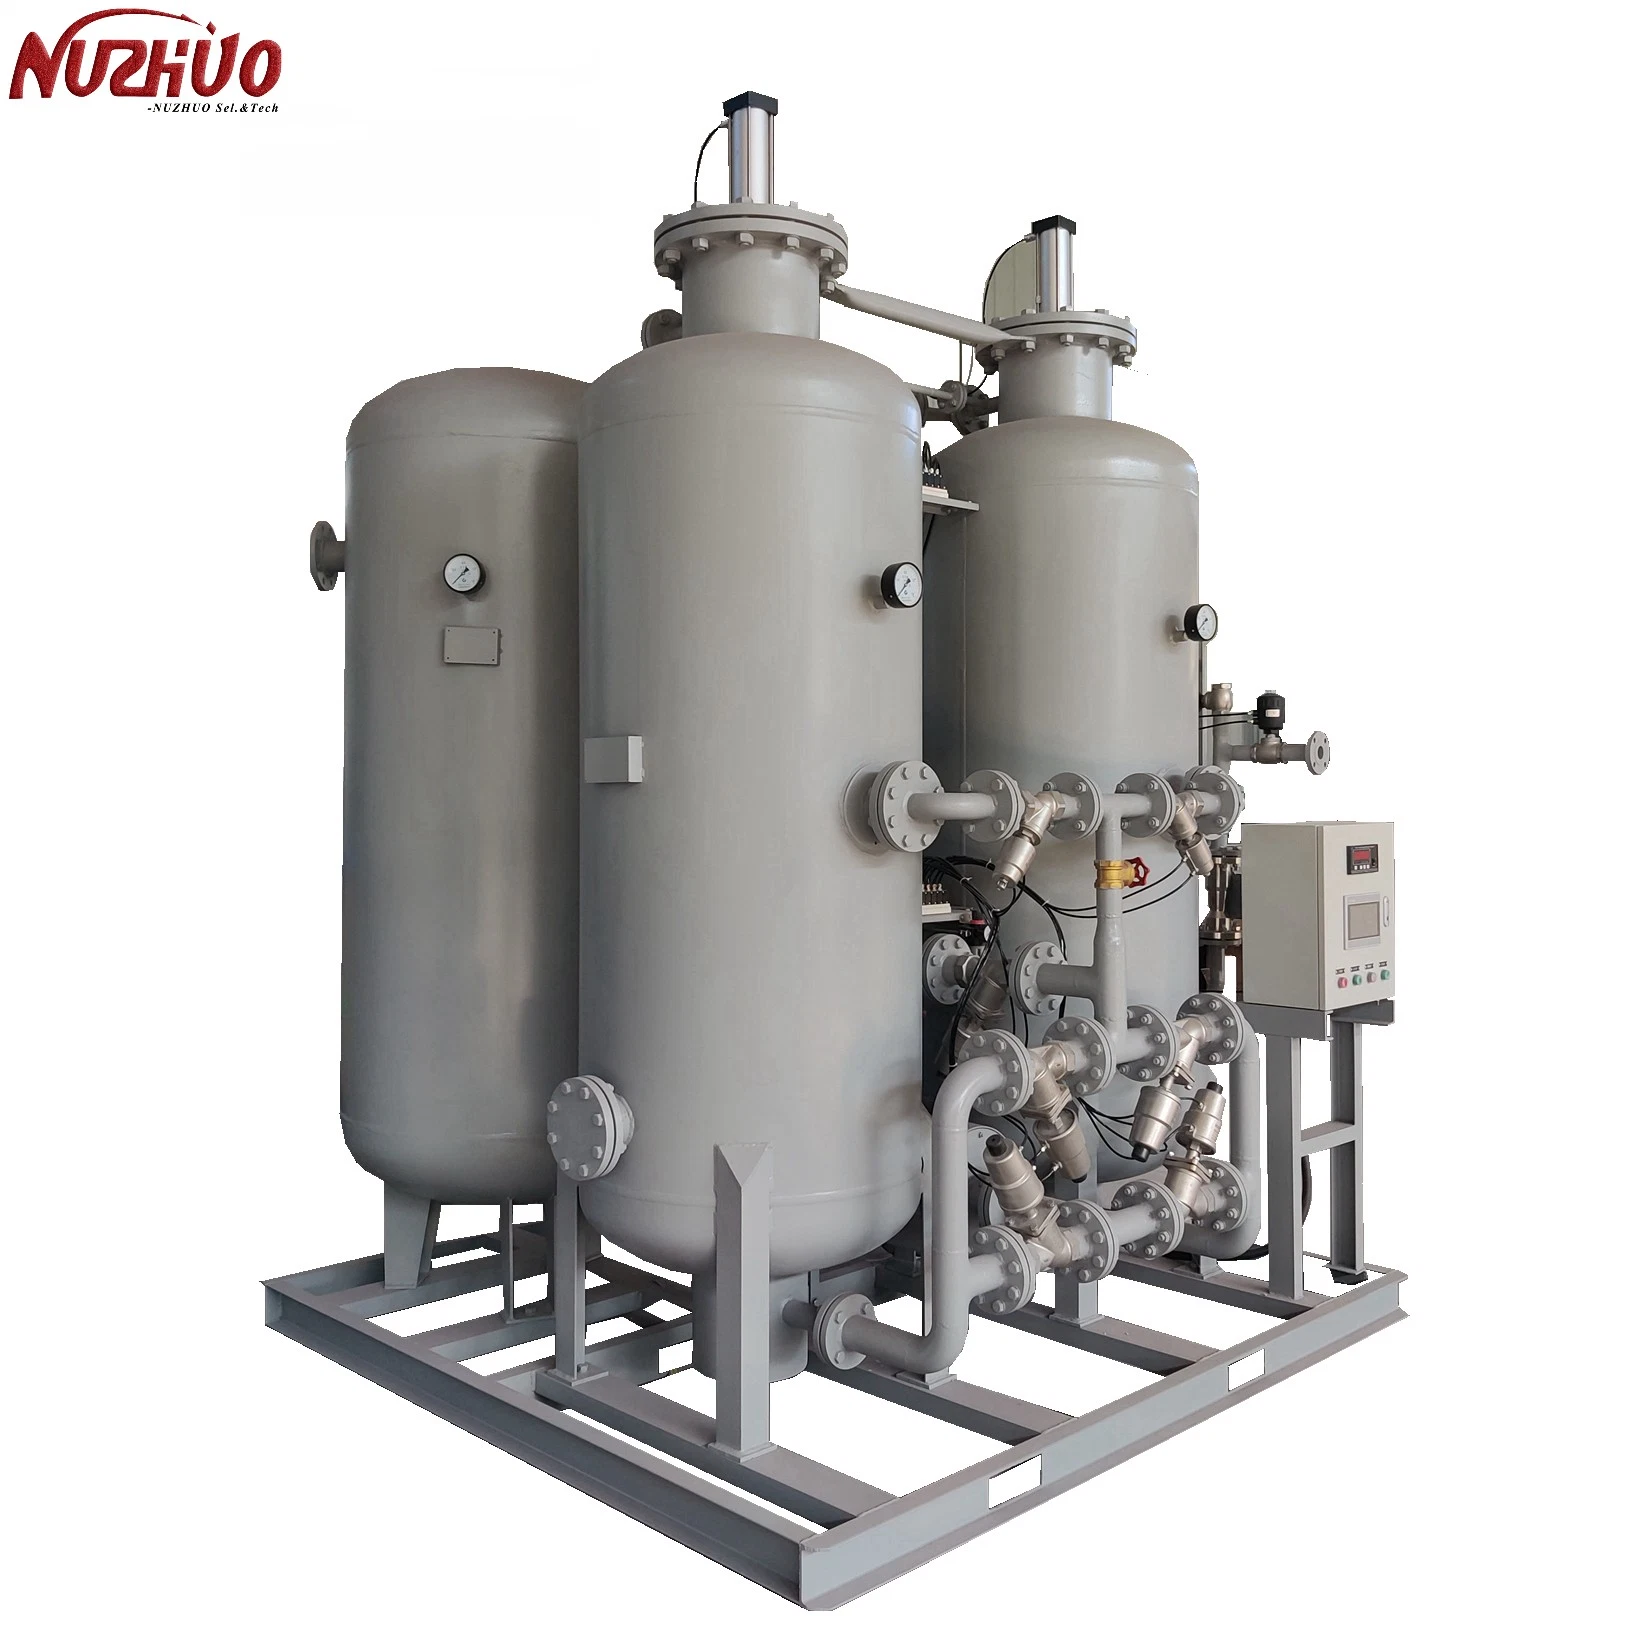 Nuzhuo Skid montado máquina productora de nitrógeno N2 planta de generación de gas